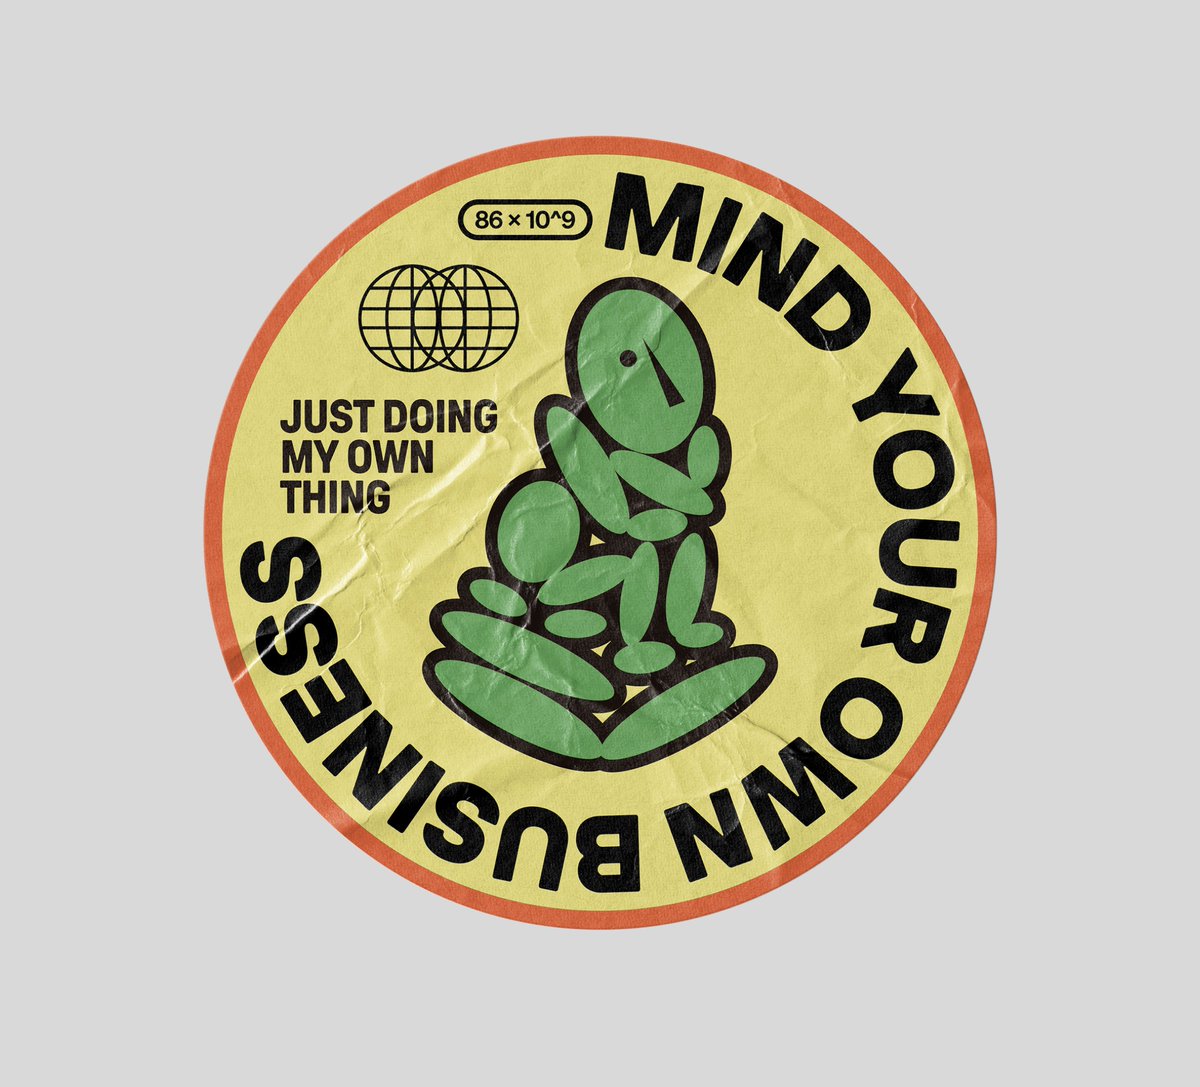 Sticker №1
[mymind vintage collection]